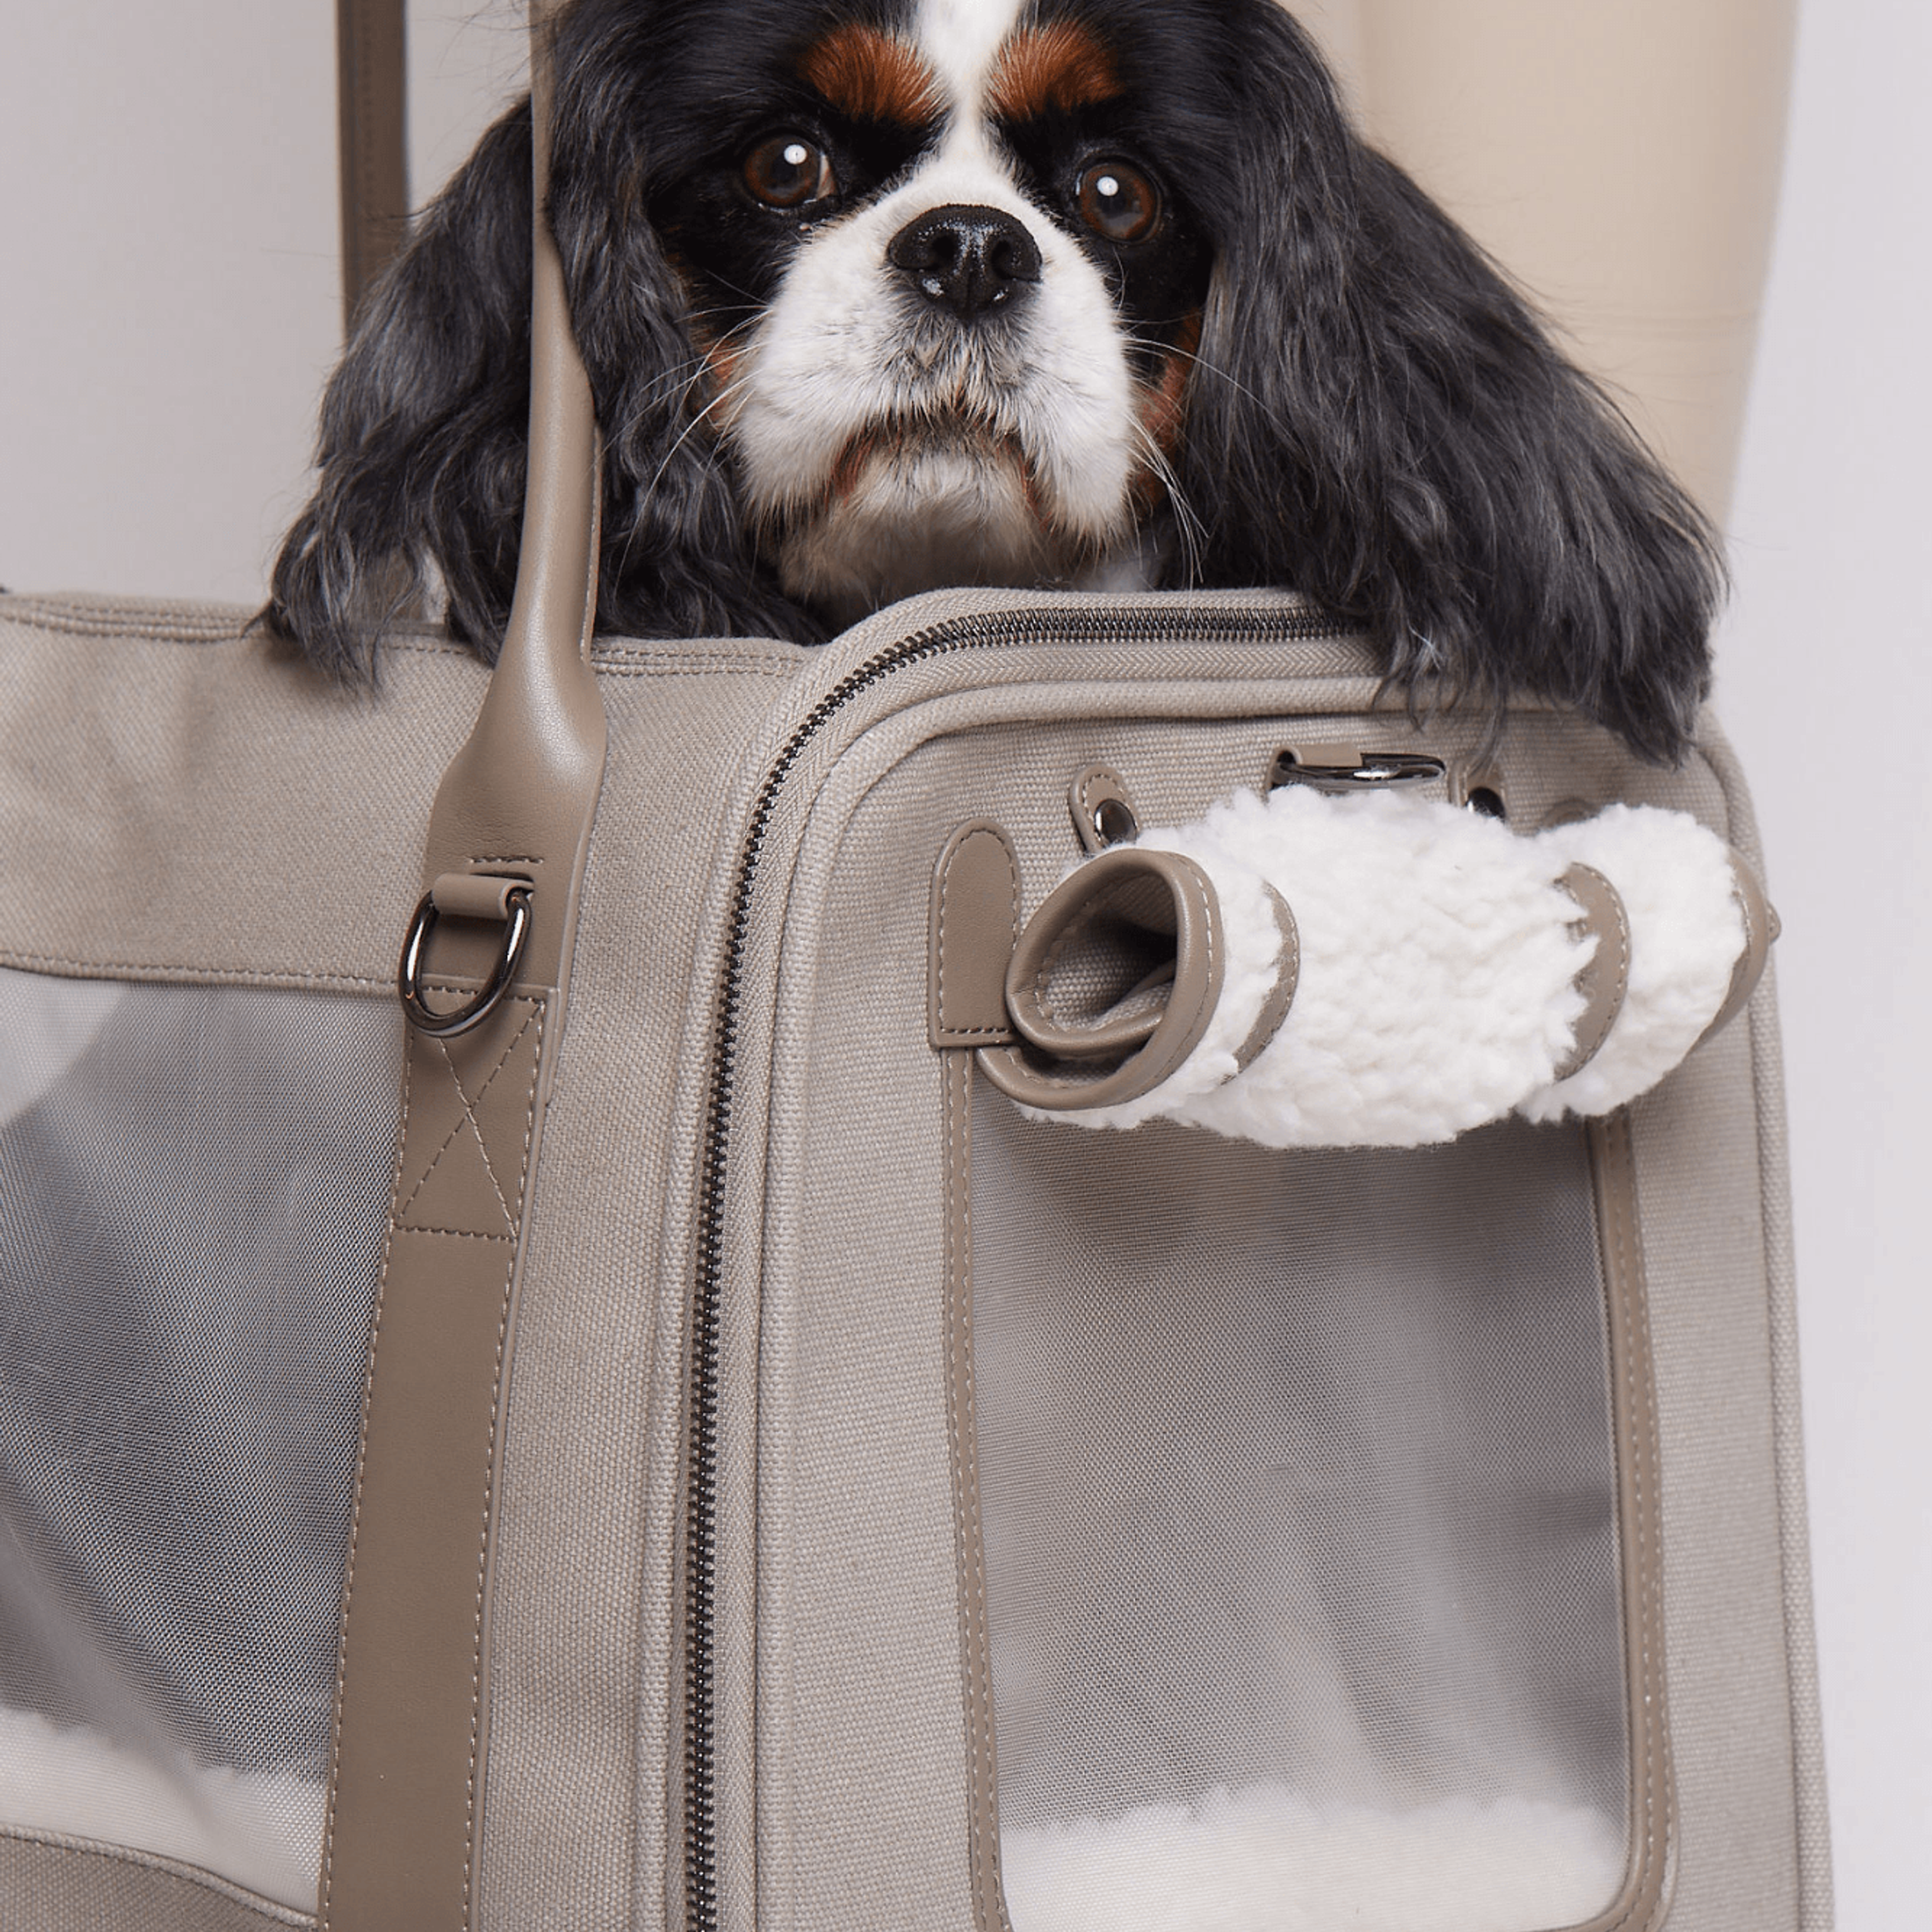 Global Citizen Pet Carrier Bag